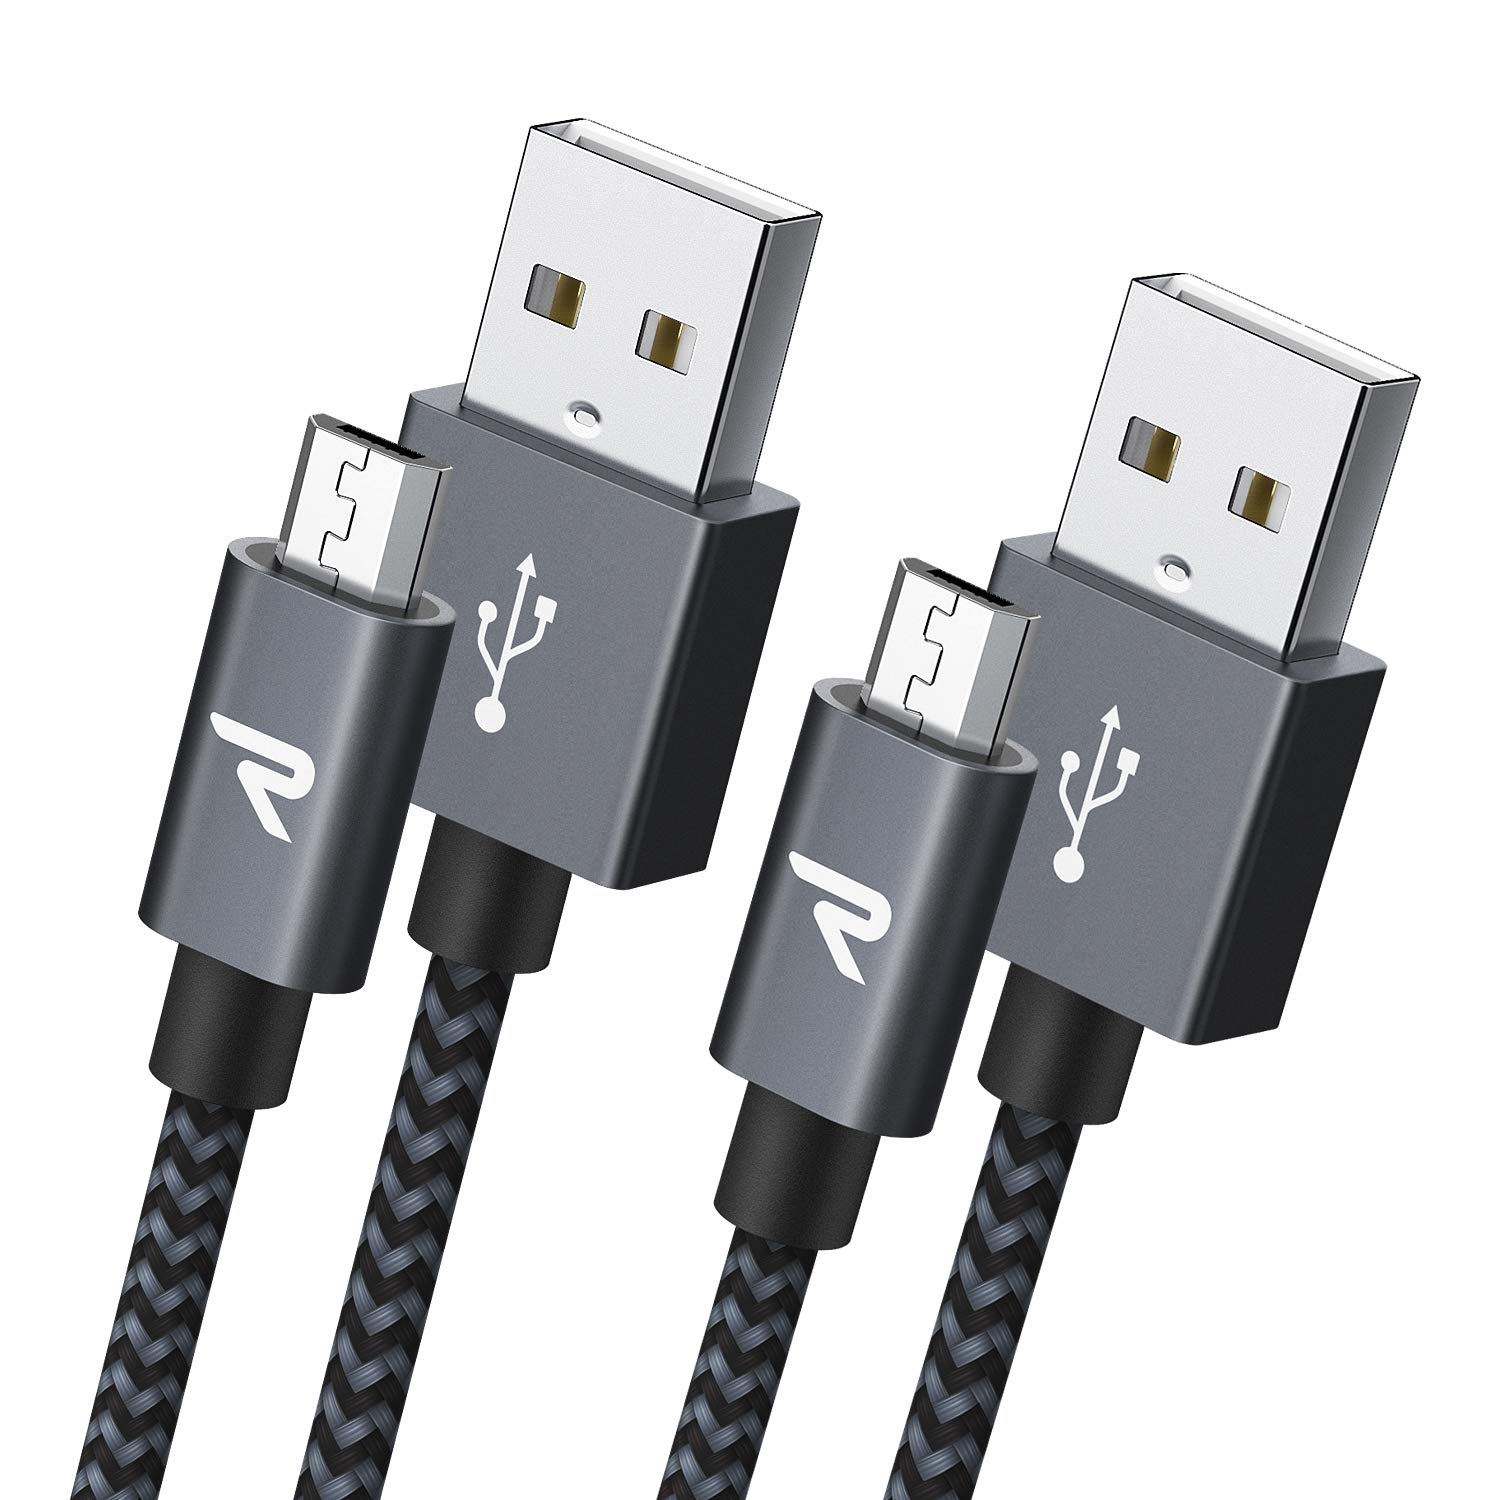 Rampow Micro-b USB ケーブル1M/2本組/黒 2.4A急速充電ケーブル 高速データ転送対応 Kindle/Sharp Aquos Pad/Zeta, Sony Xperia J1/A/Z3,